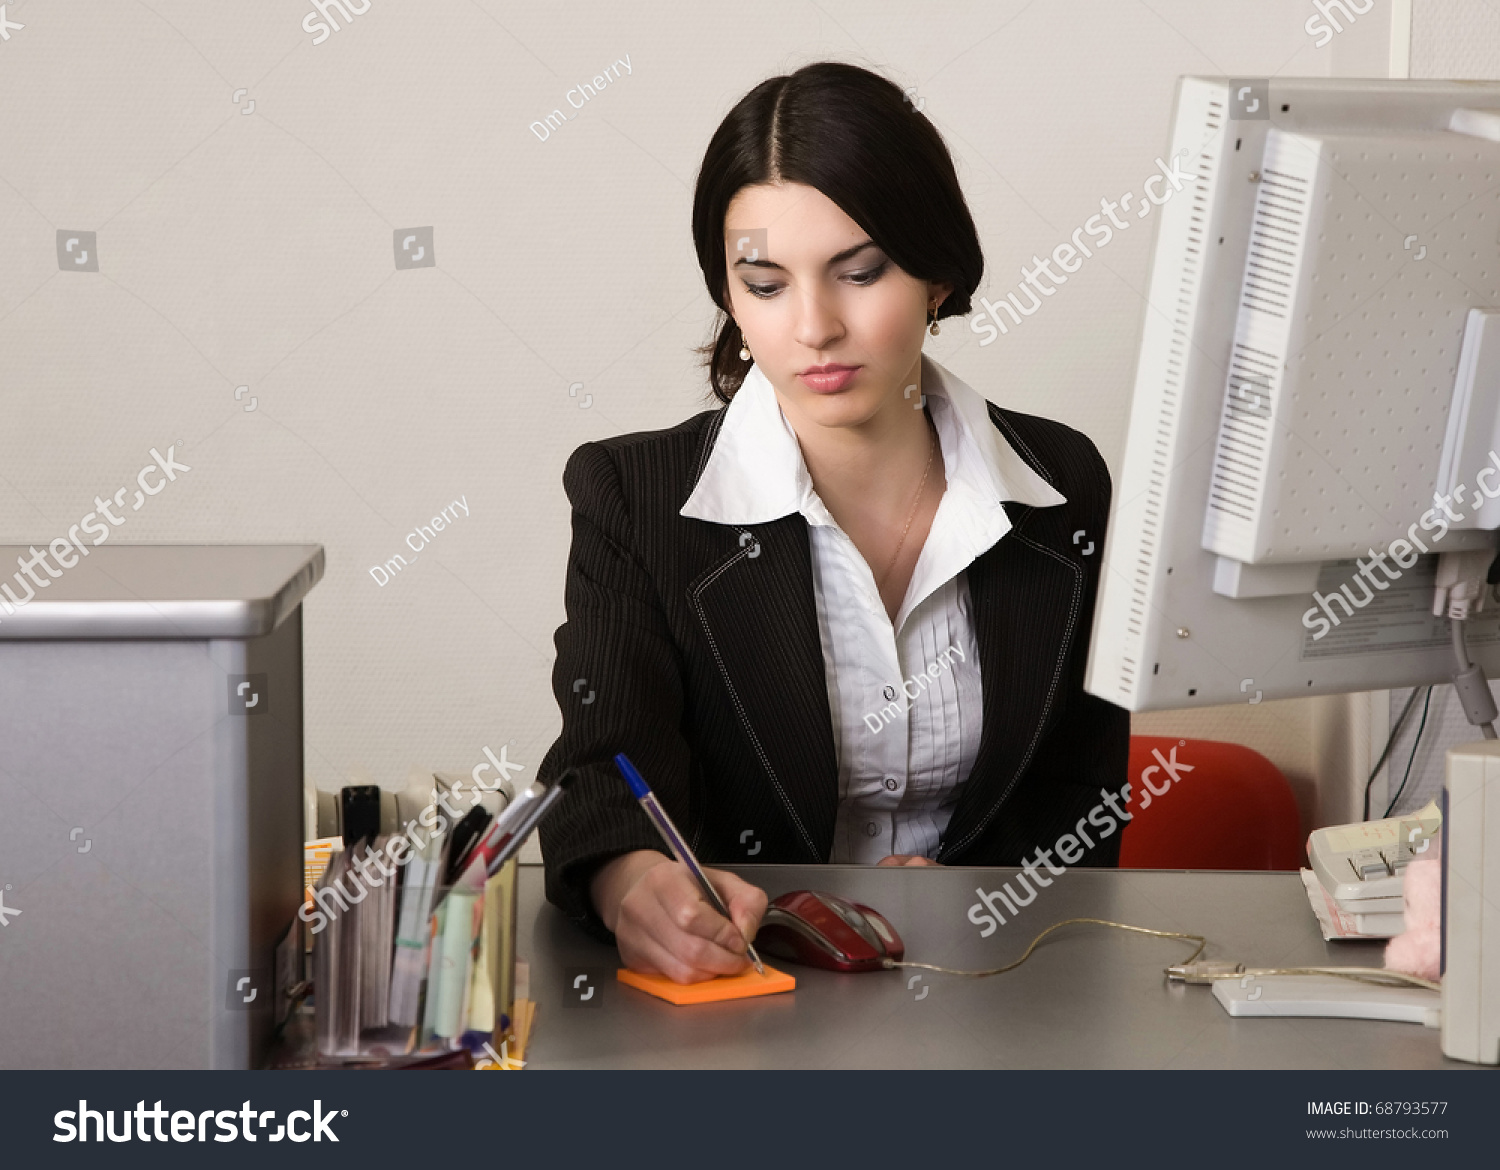 Пухлая секретарша дрочит на рабочем месте фото